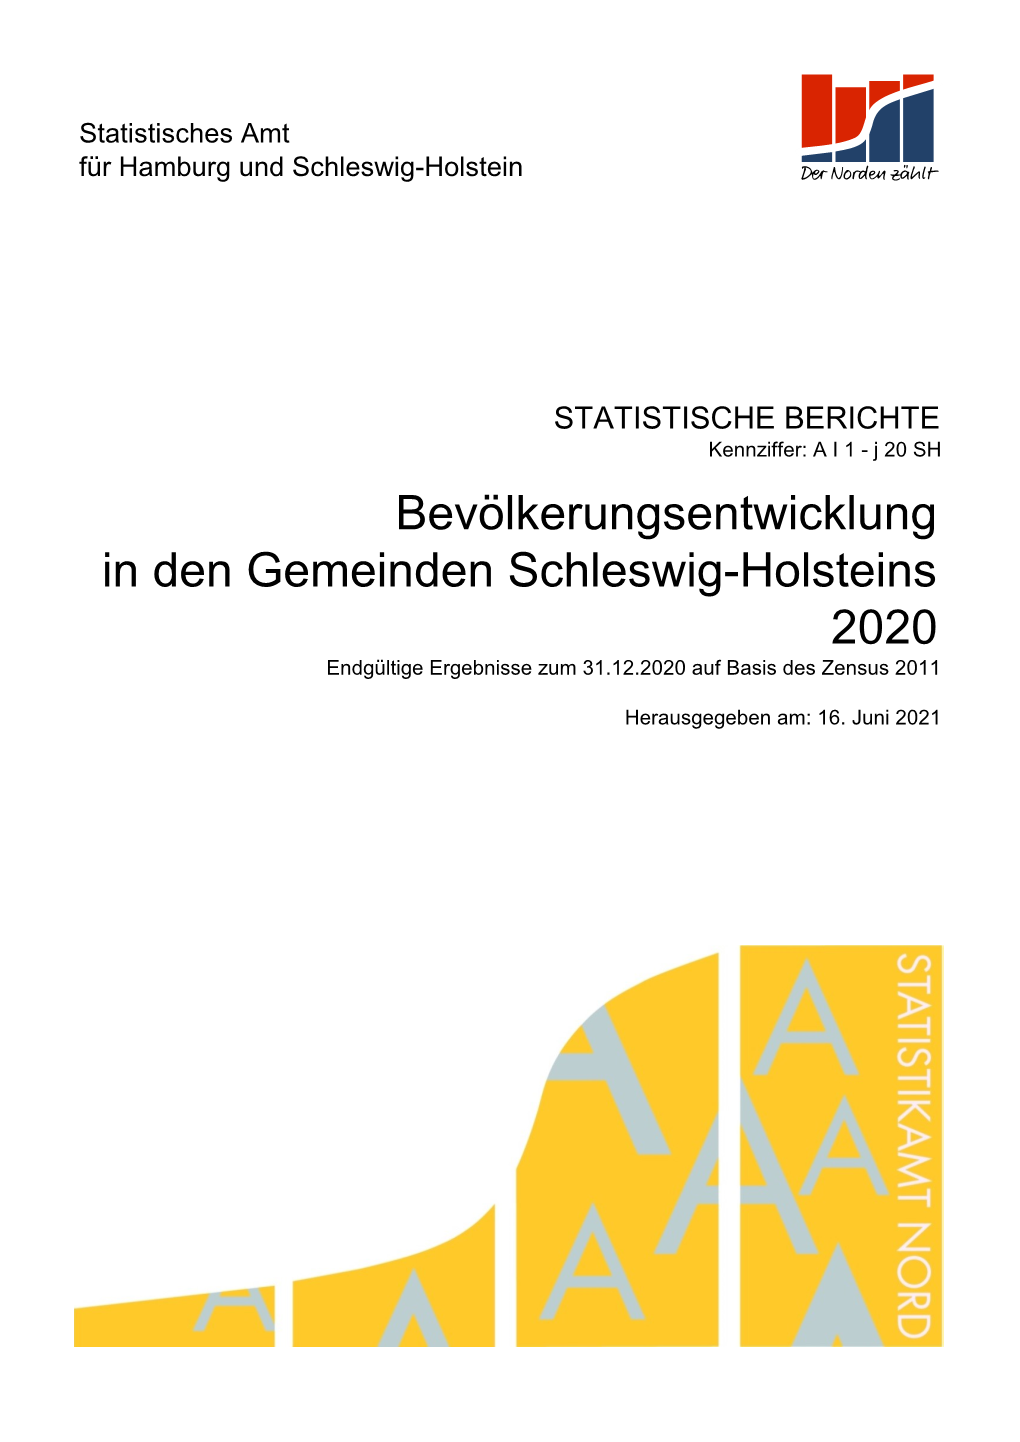 2020 Bevölkerungsentwicklung in Den Gemeinden Schleswig-Holsteins